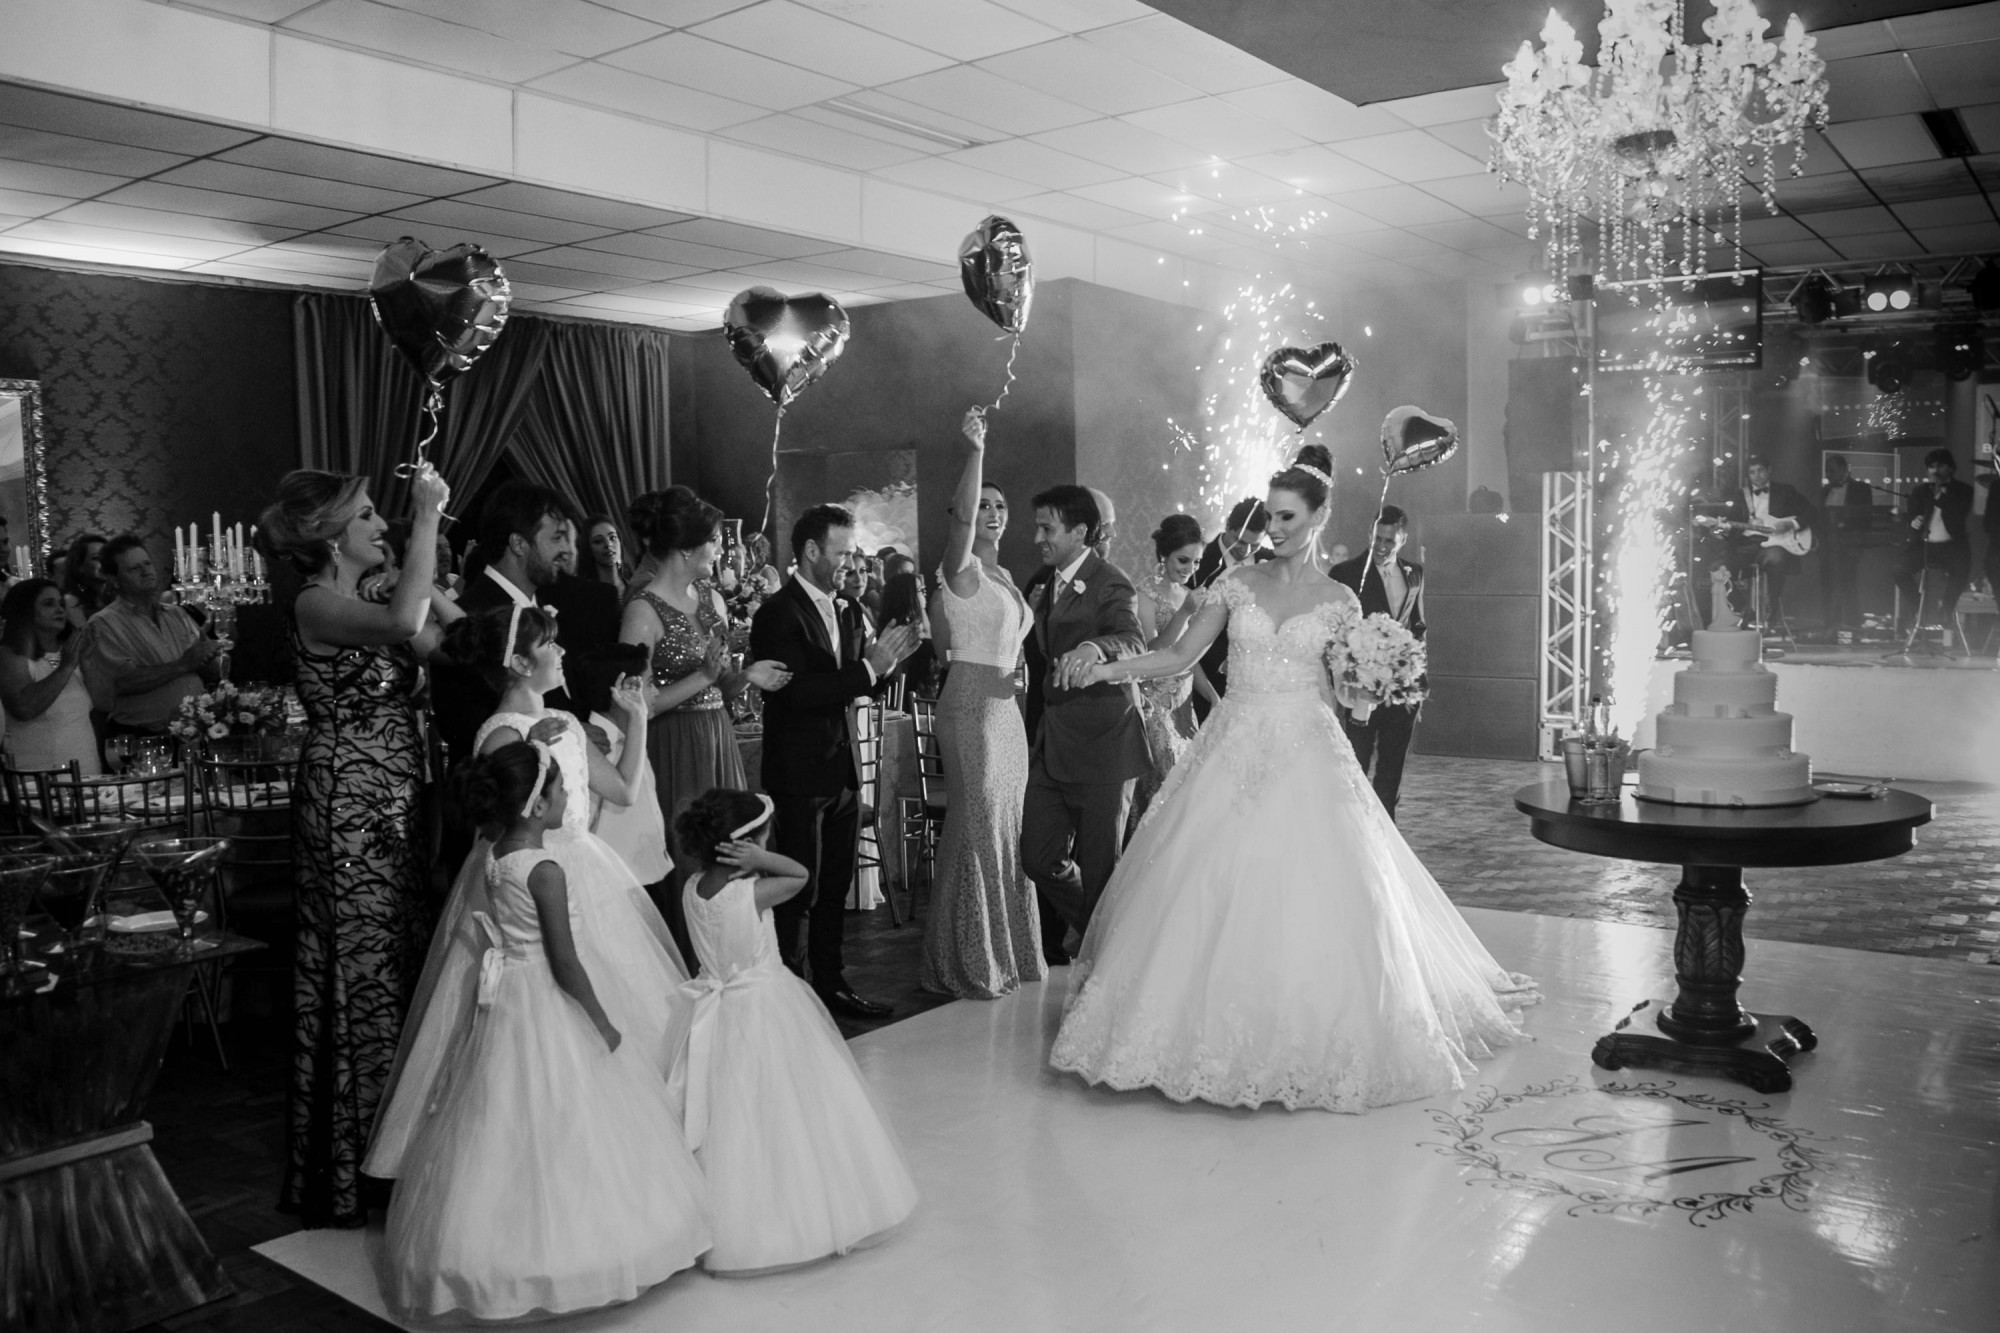 Casamento Anderson e Juliana Fioreli em Iporã Paraná - por Lorran Souza e Léia Sotile - Fotografos de casamentos - JA-2444